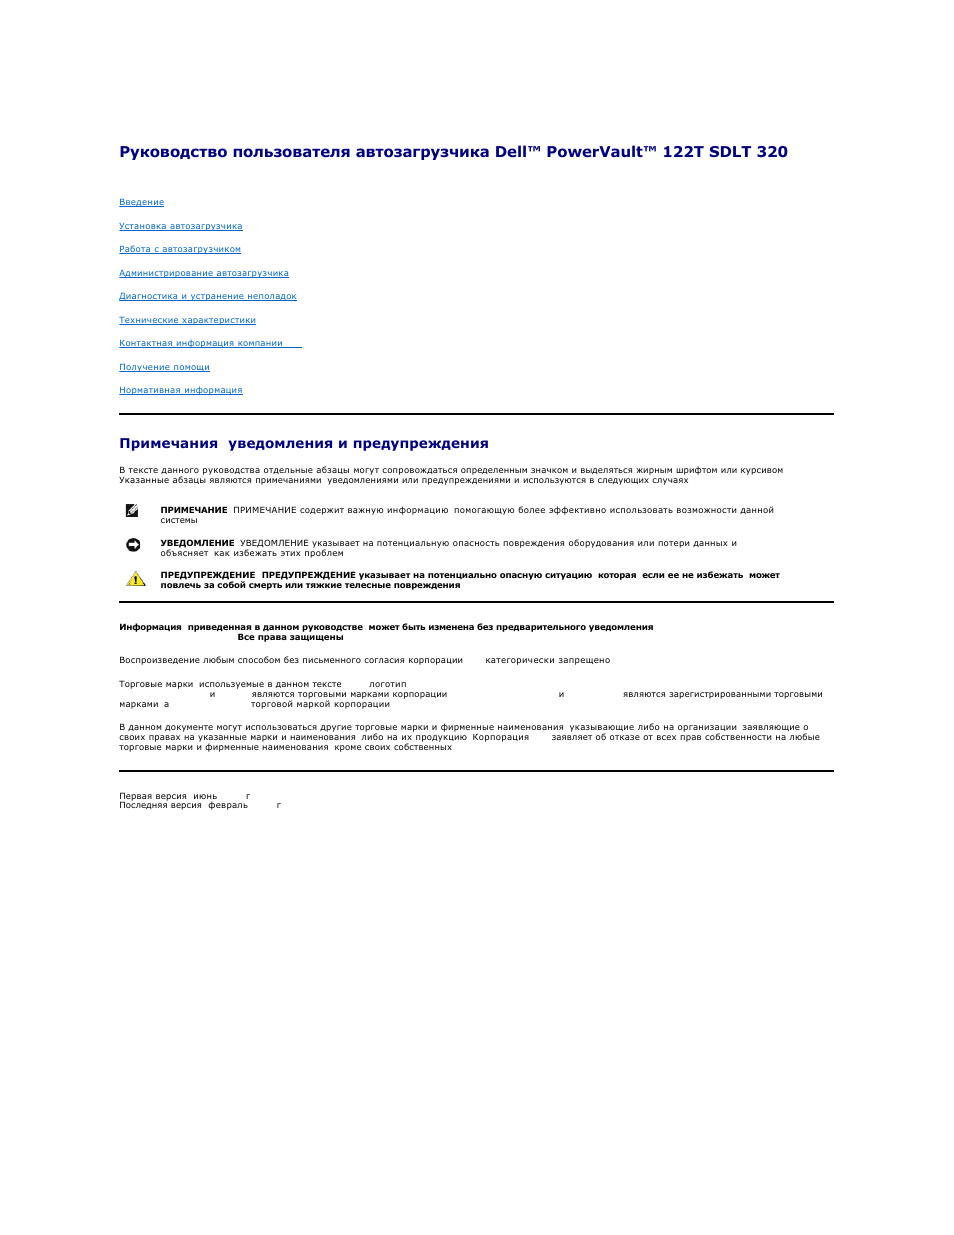 Инструкция по эксплуатации Dell PowerVault 122T SDLT 320 (Autoloader) | 42 страницы